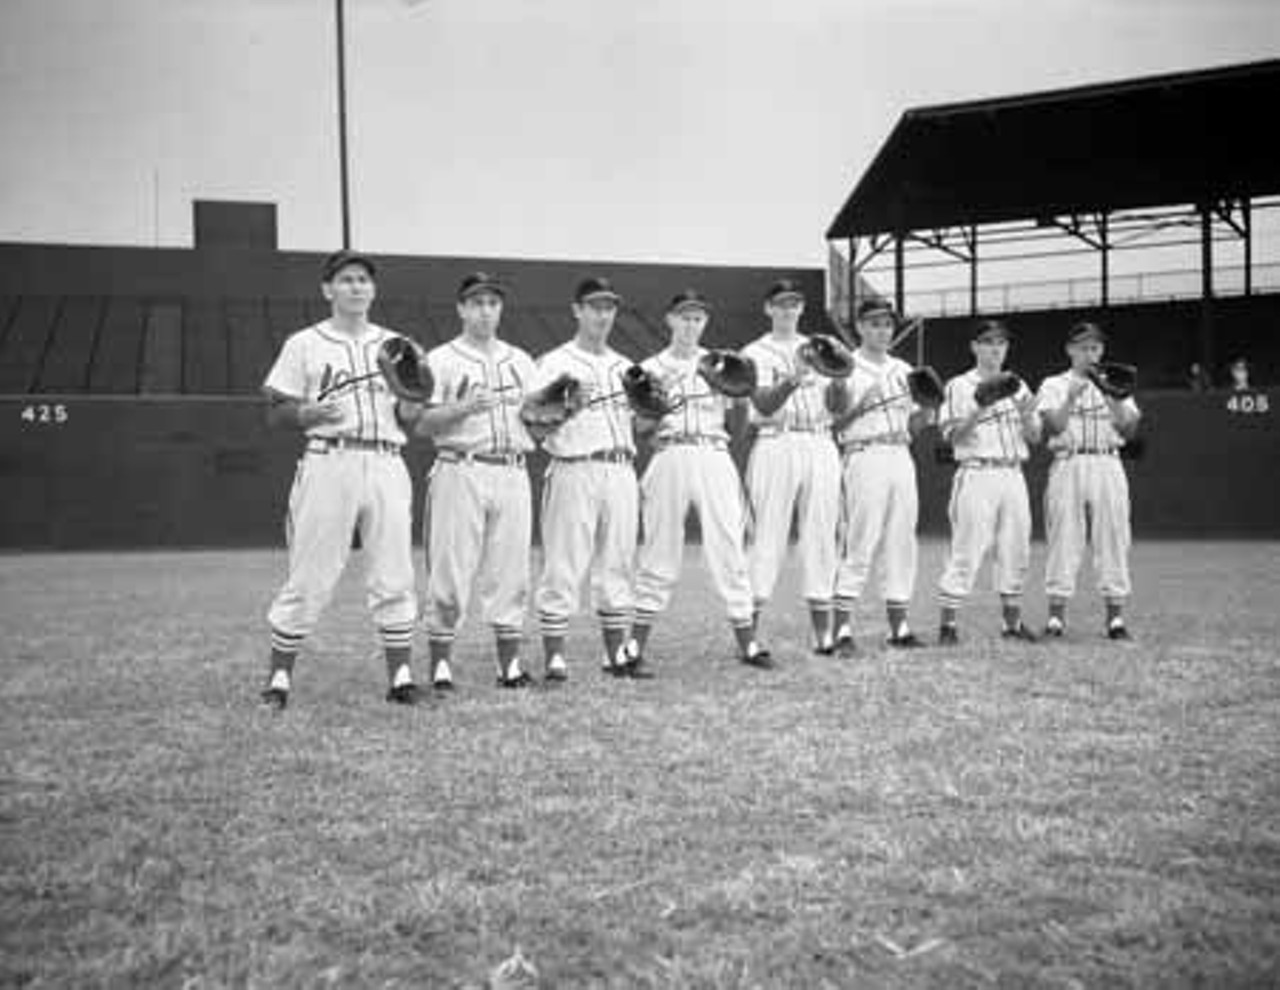 1949. Infielders Solly Hemus, "Rabbit" Glaviano, Louis Klein, "Red" Schoendienst, "Slats" Marion, "Nippy" Jones, "Rocky" Nelson and Eddie Kazak.